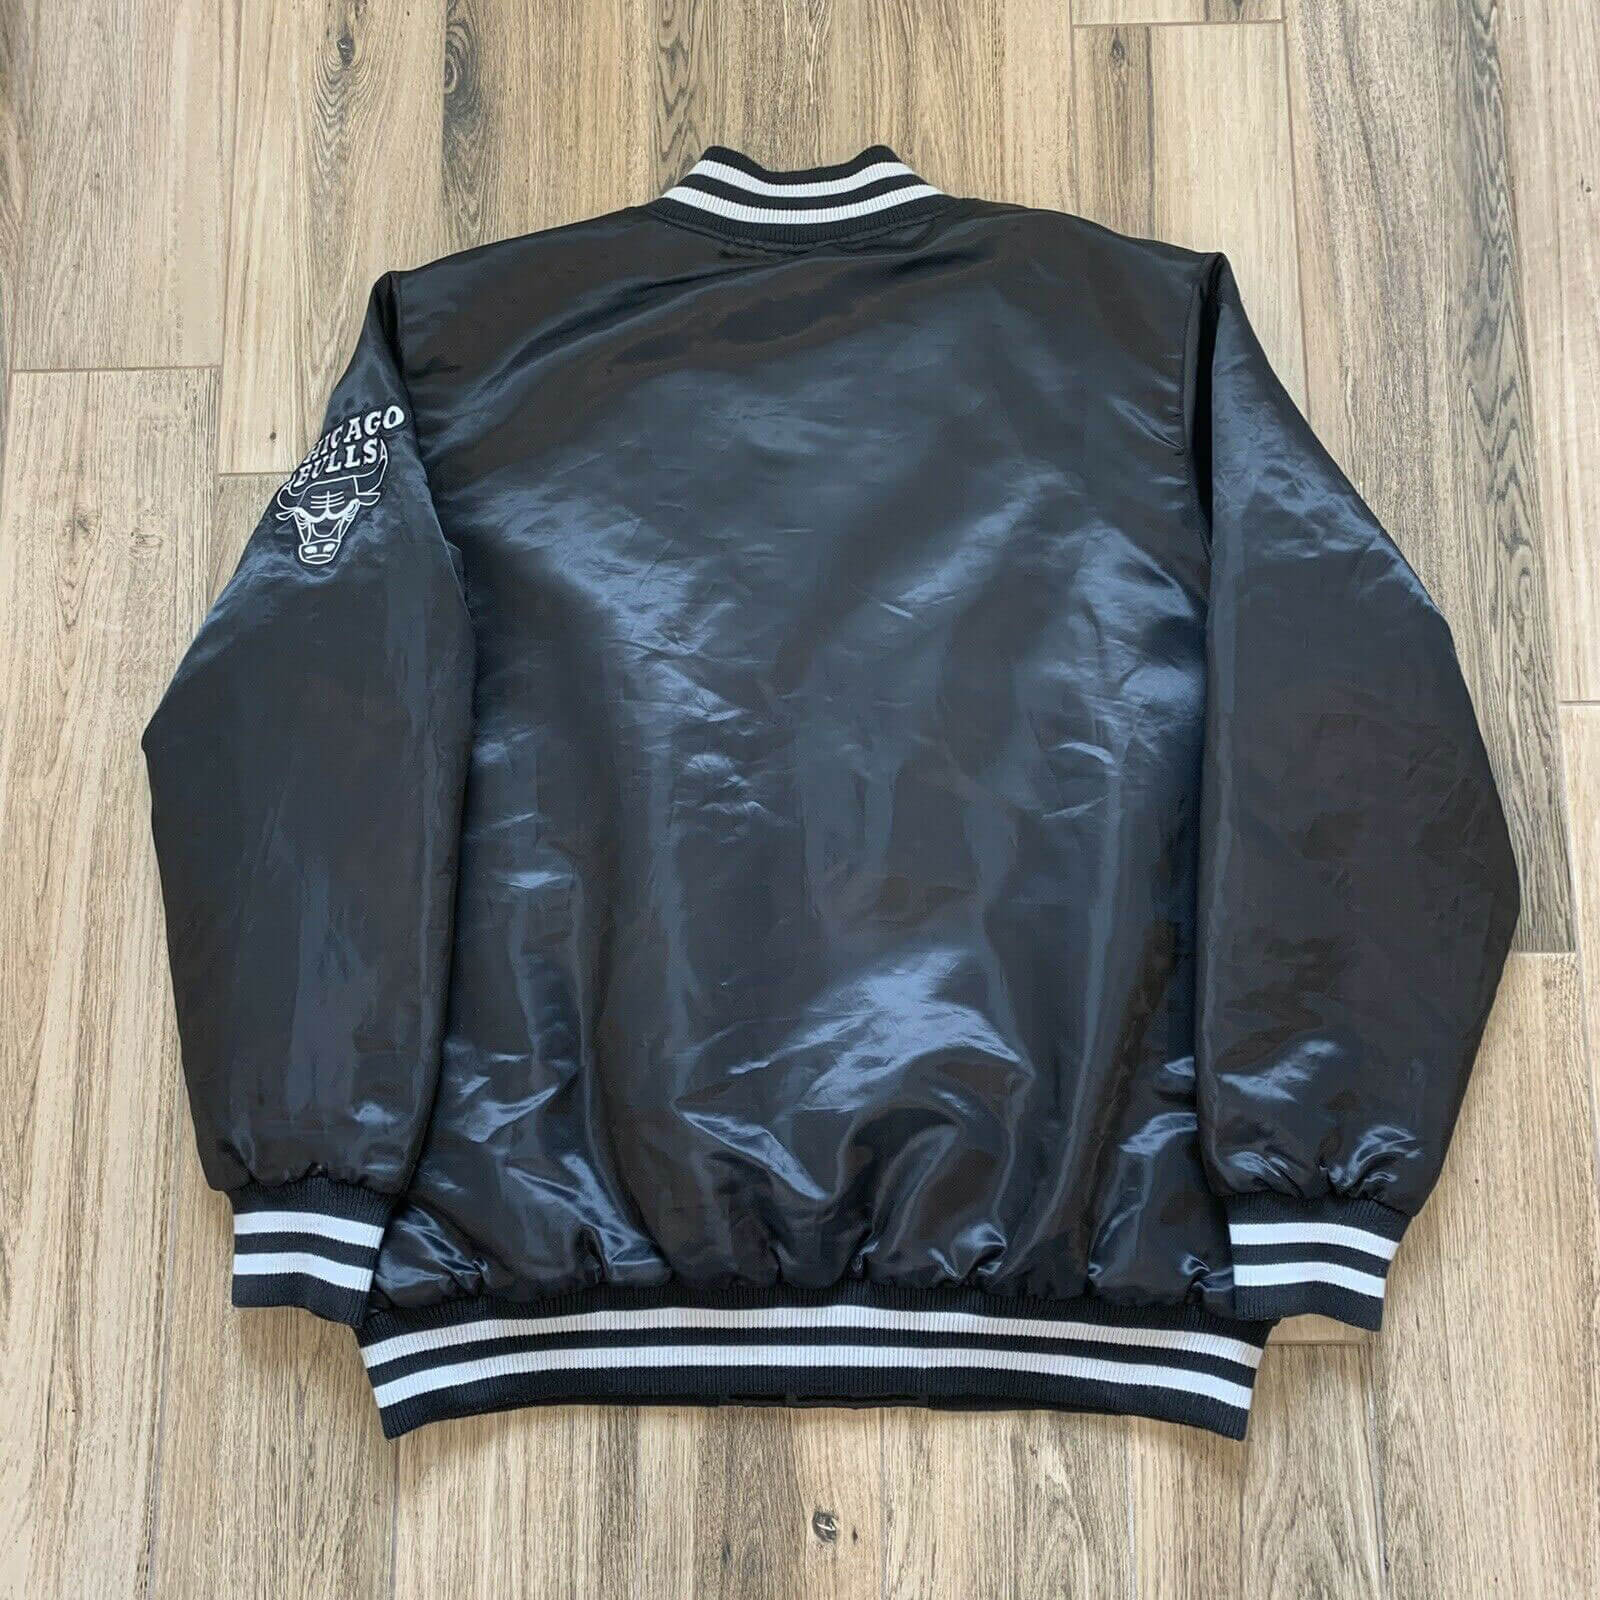 Chicago Bulls Black Vintage Starter Jacket 4X-Large